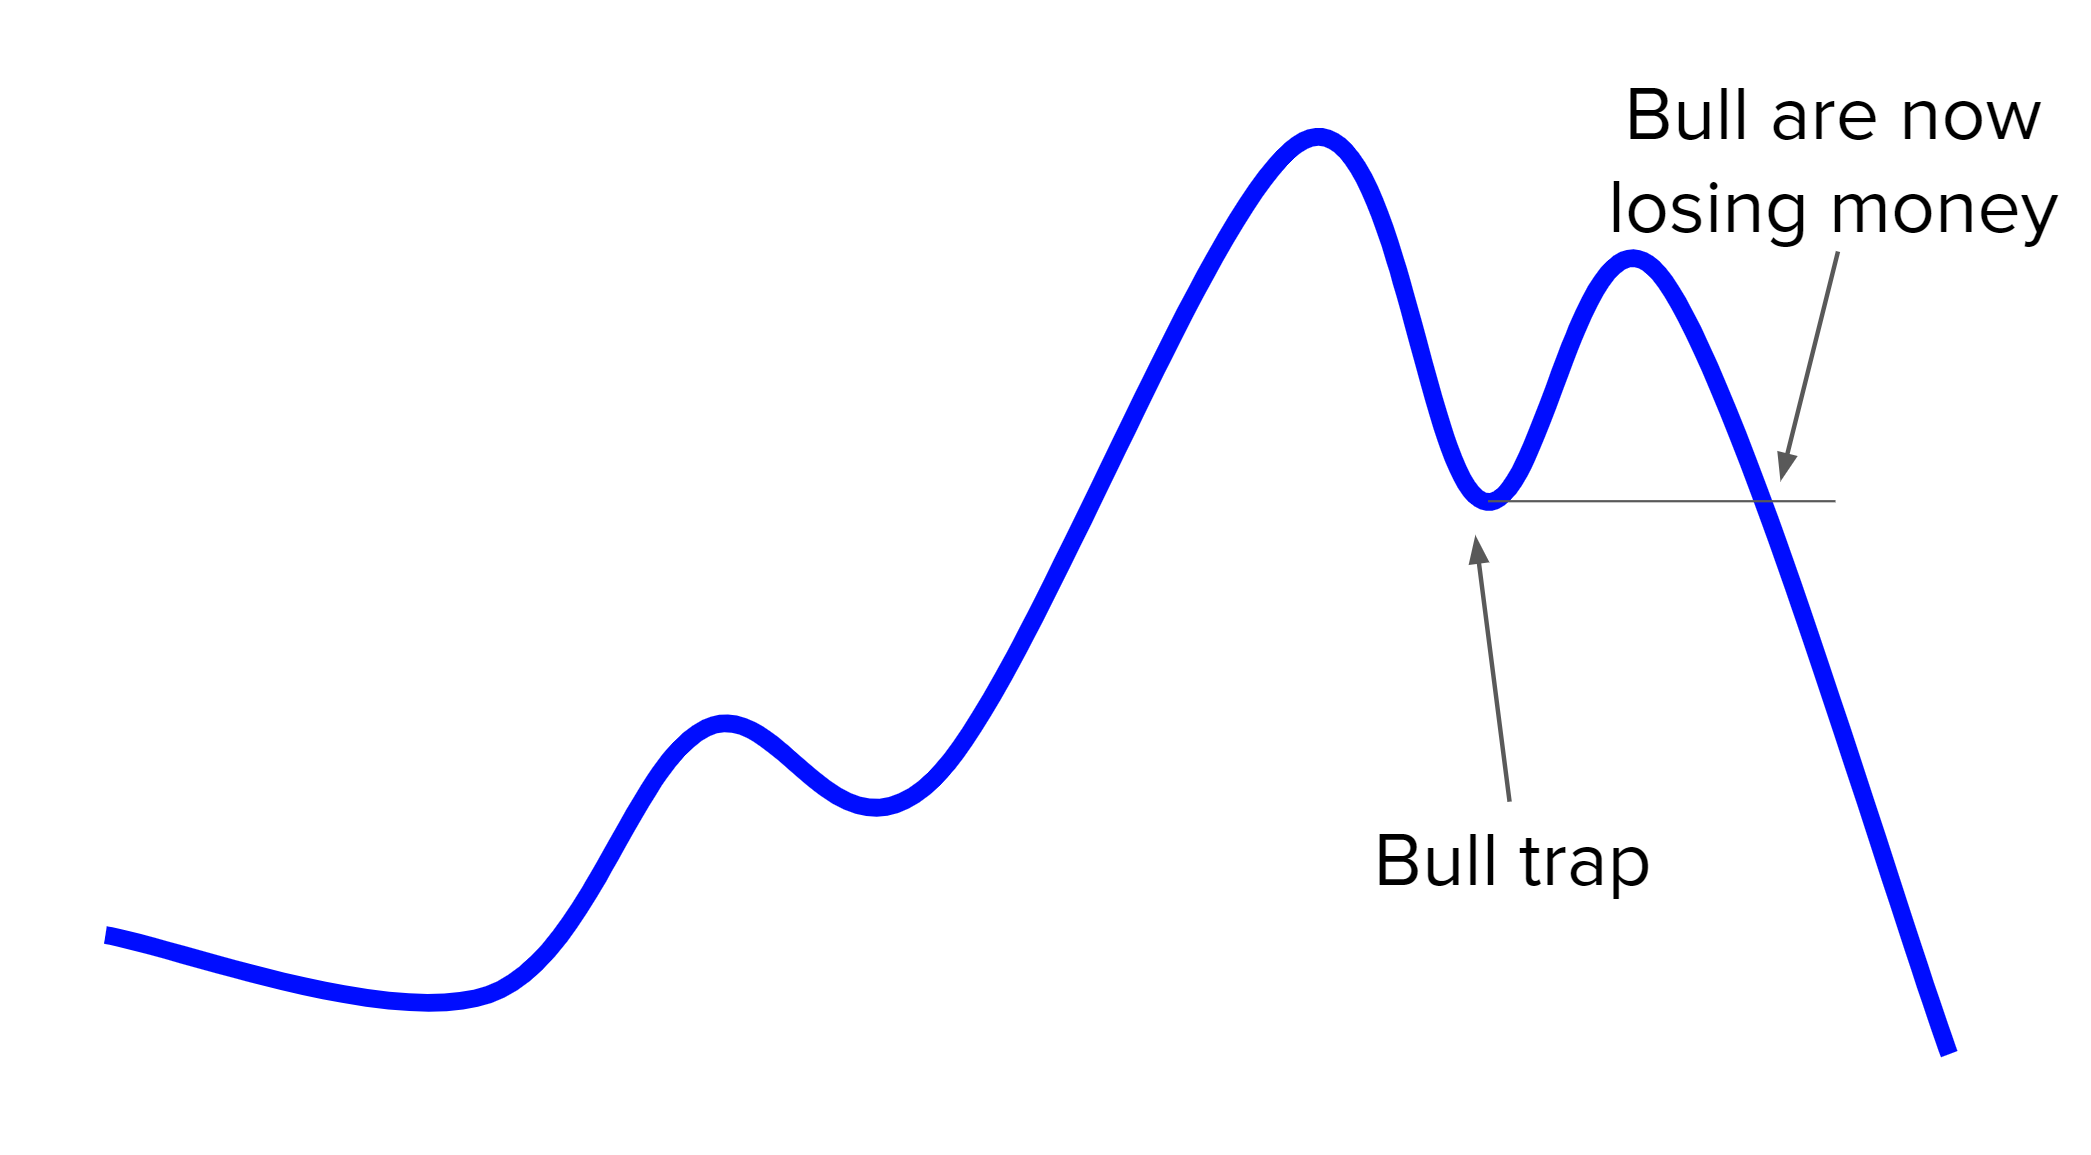 Bull trap